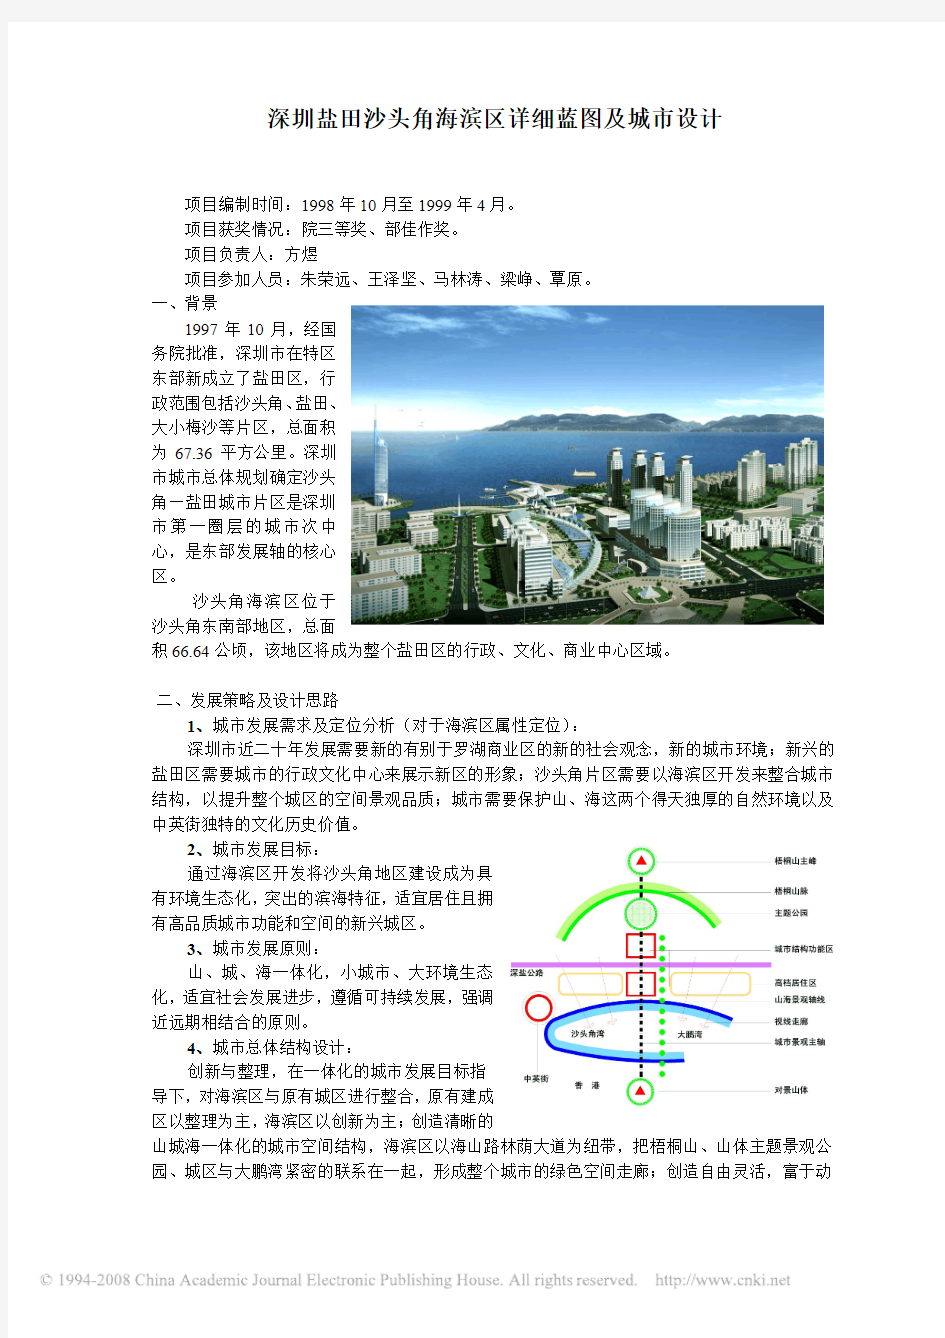 深圳盐田沙头角海滨区详细蓝图及城市设计